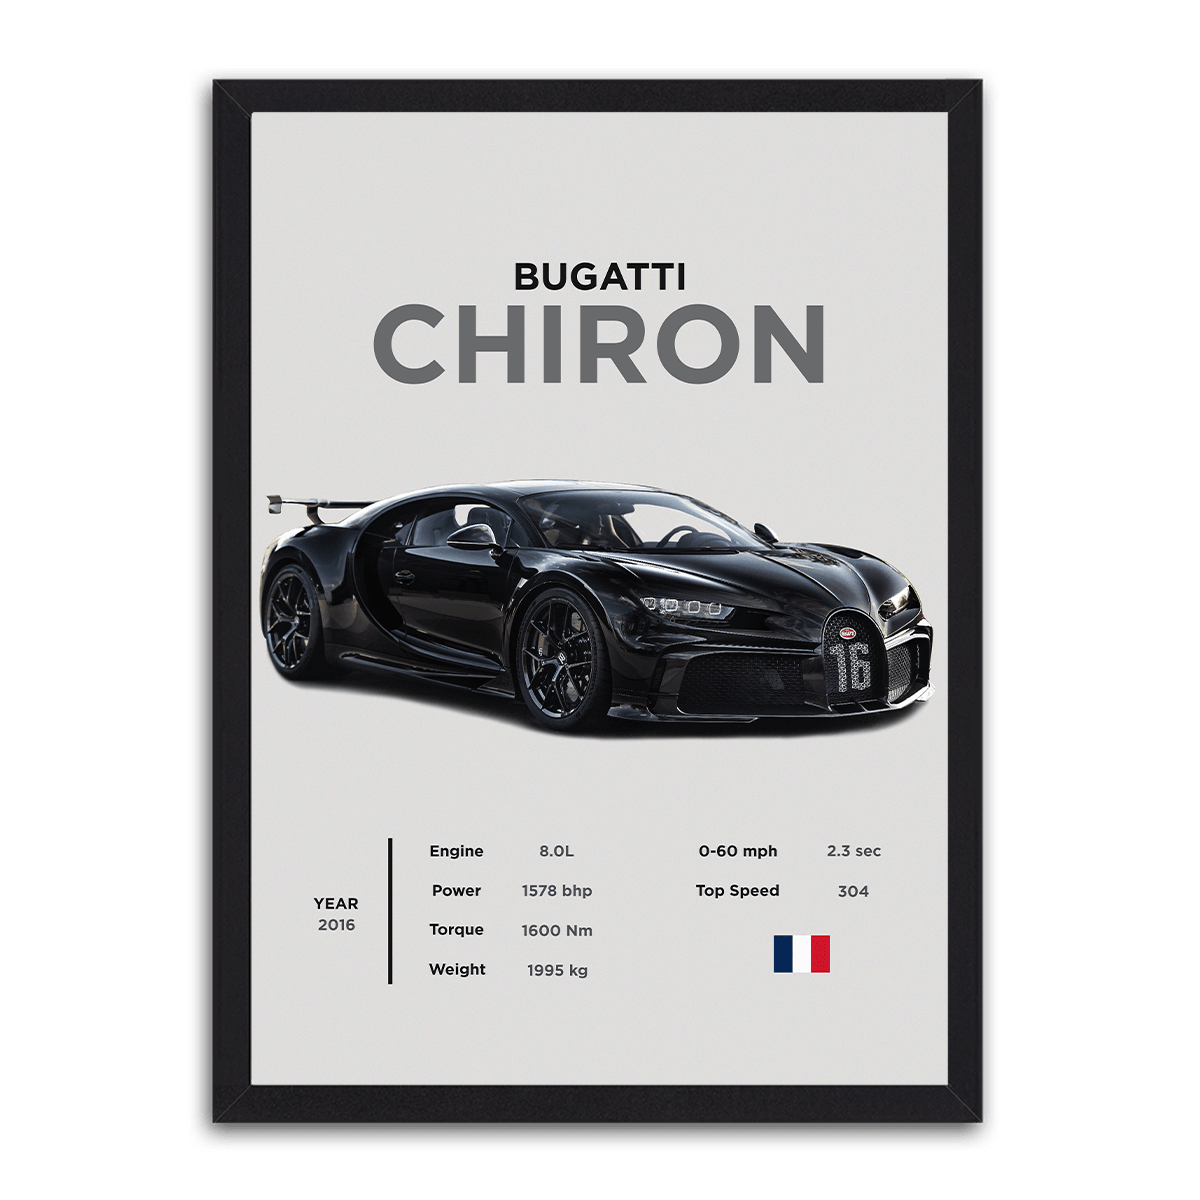 Bugatti Chiron - Pinnacle of Performance - PixMagic